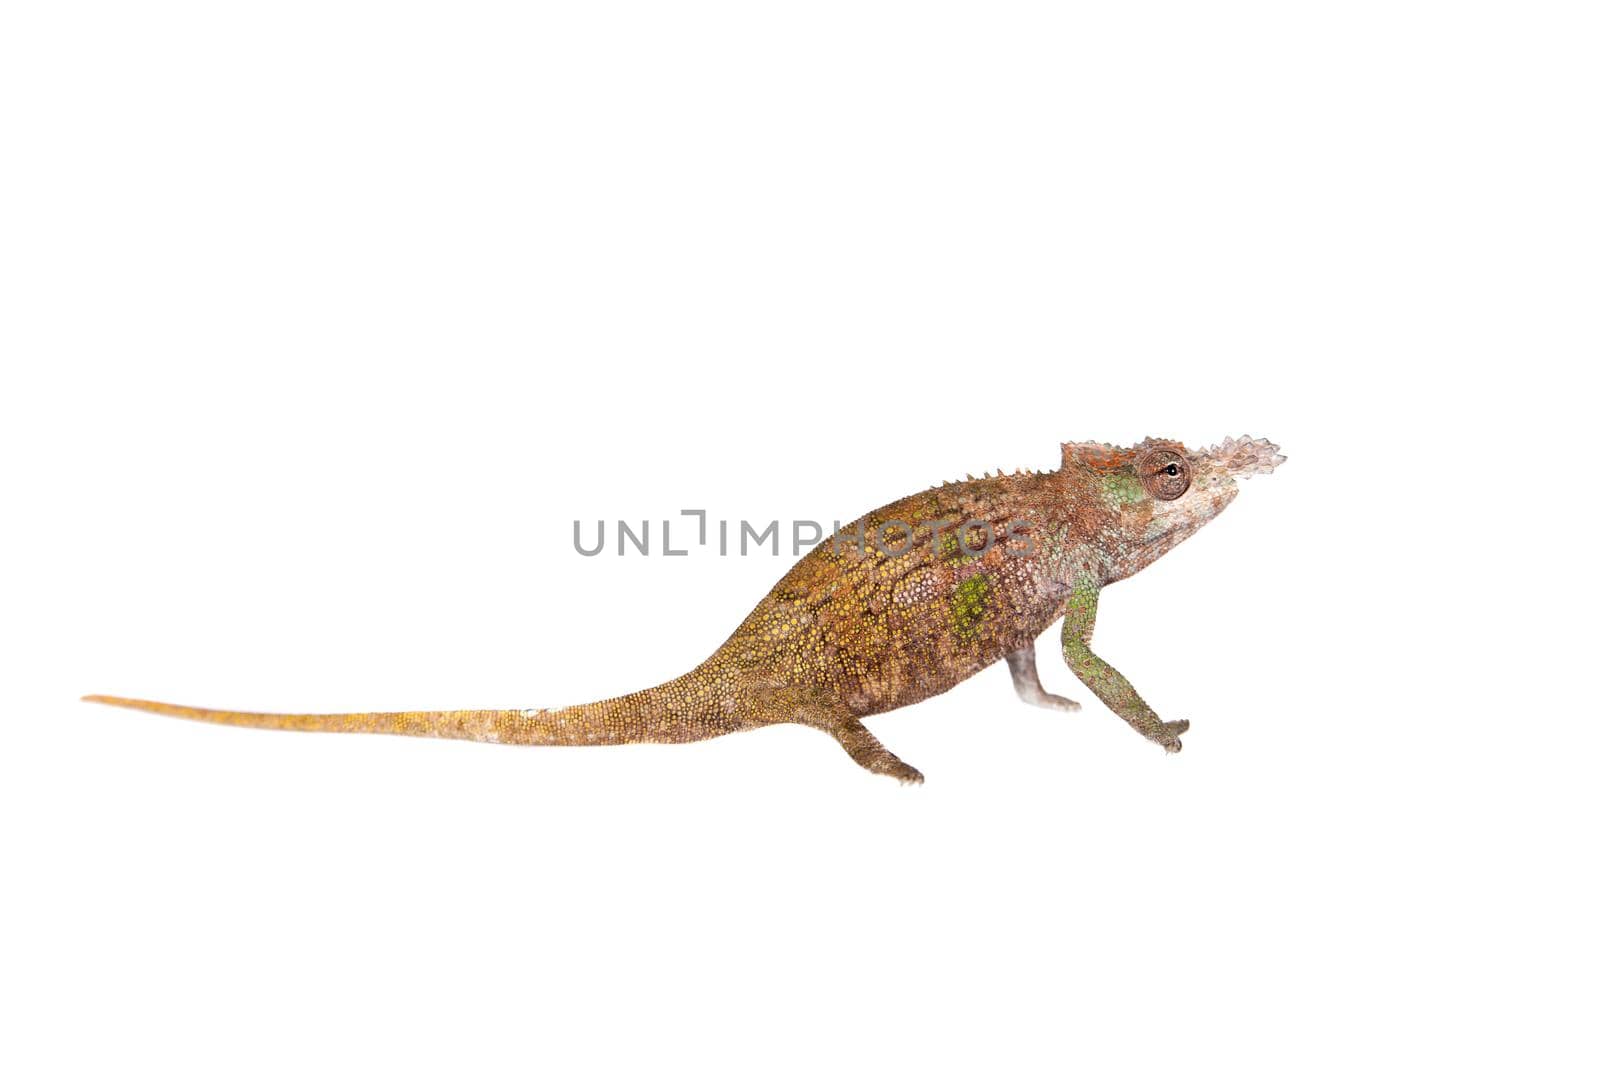 Boehme's chameleon, kinyongia boehmei, isolated on white background